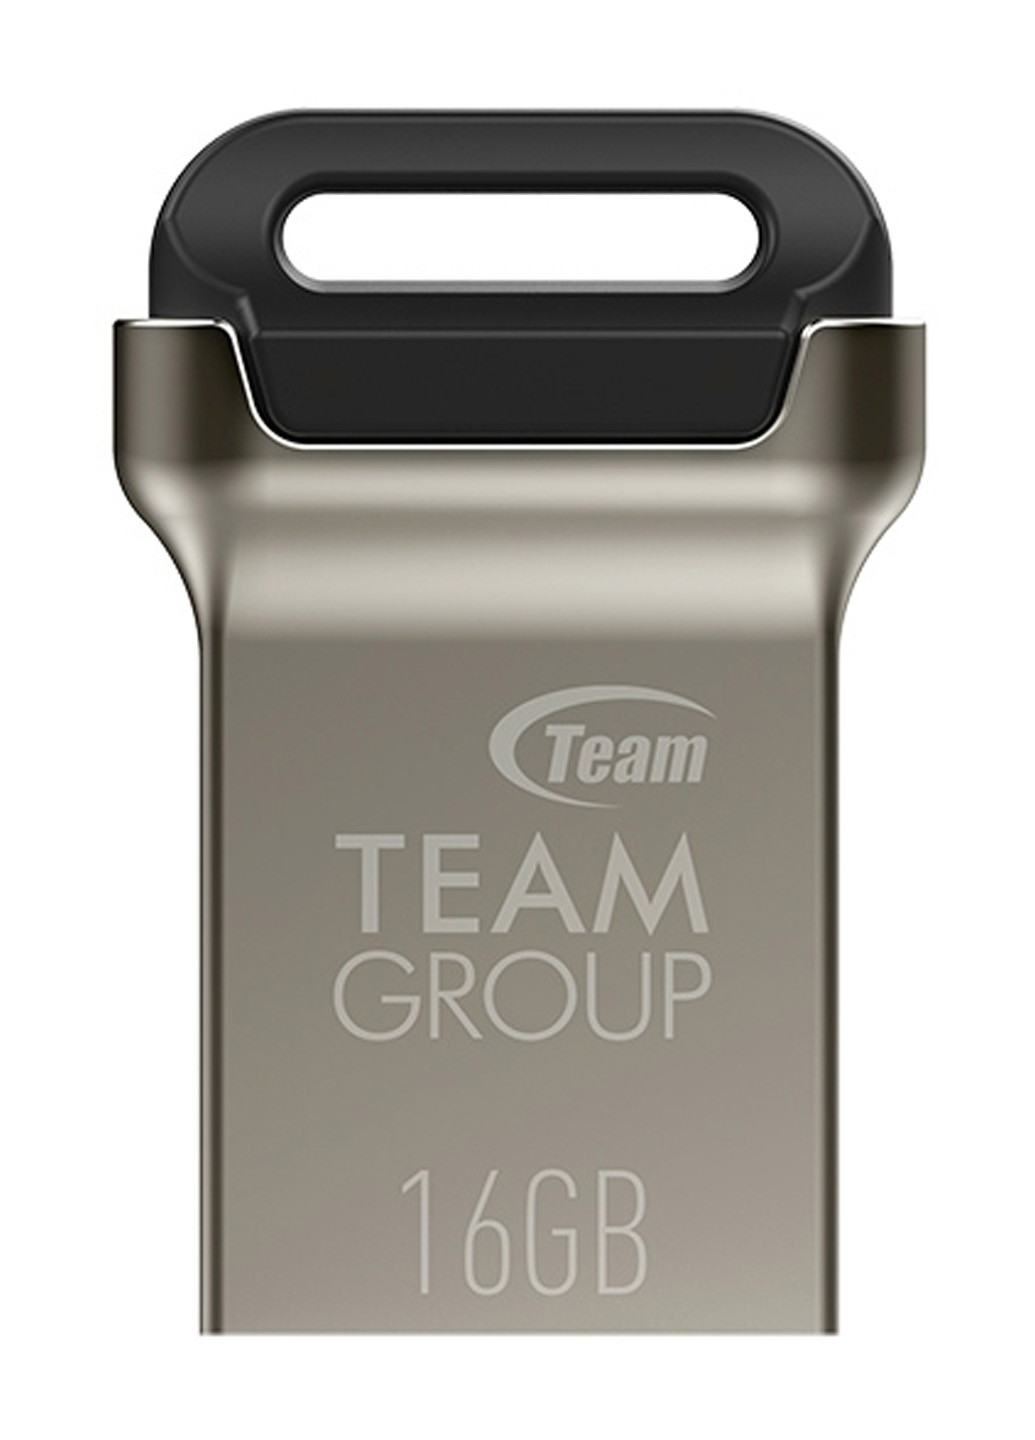 Флеш память USB C162 16GB Metal (TC162316GB01) Team флеш память usb team c162 16gb metal (tc162316gb01) (134201652)